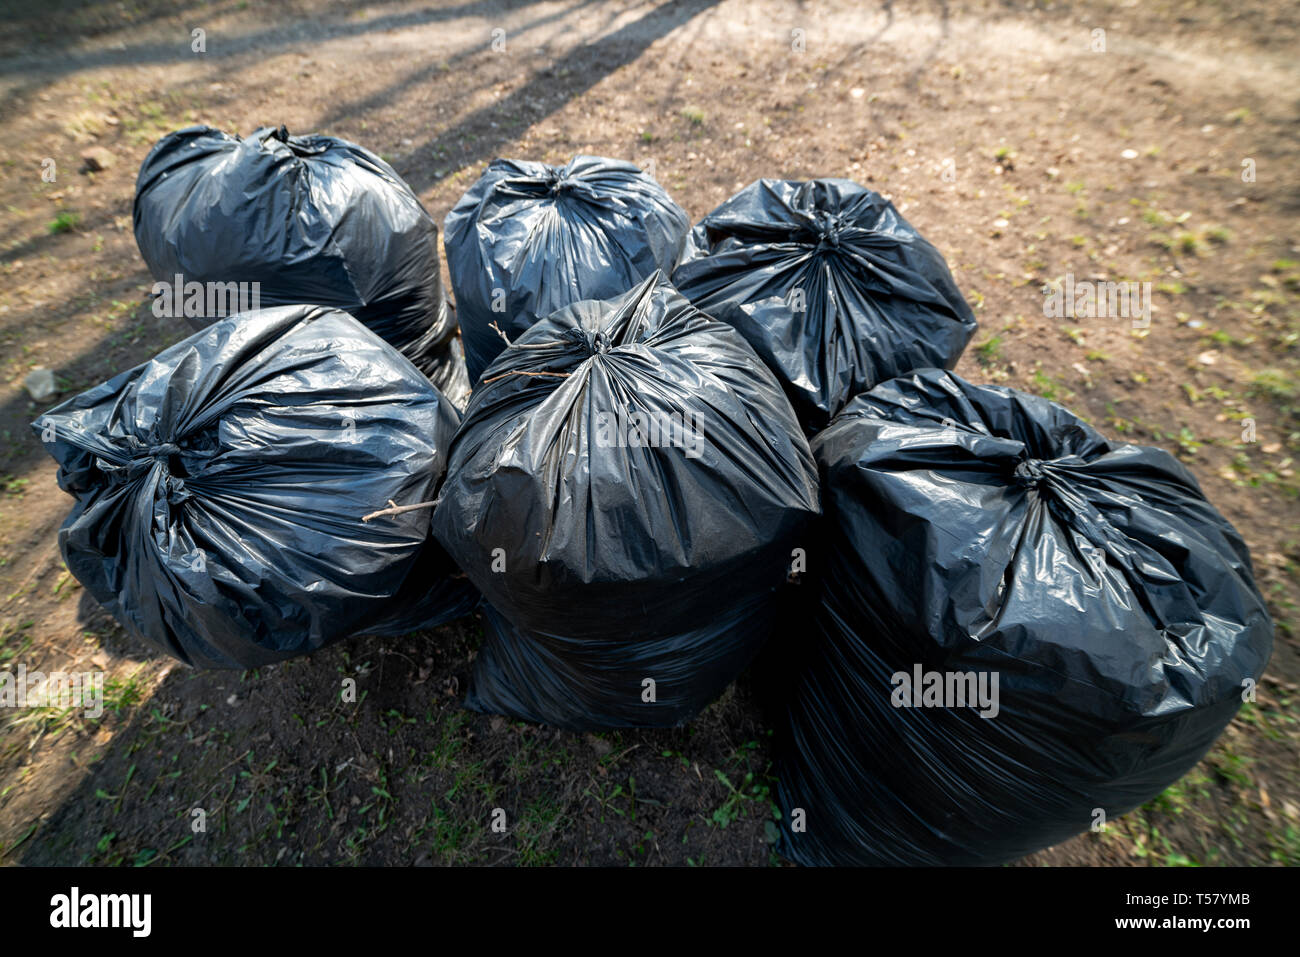 Large black garbage bags. Stock Photo